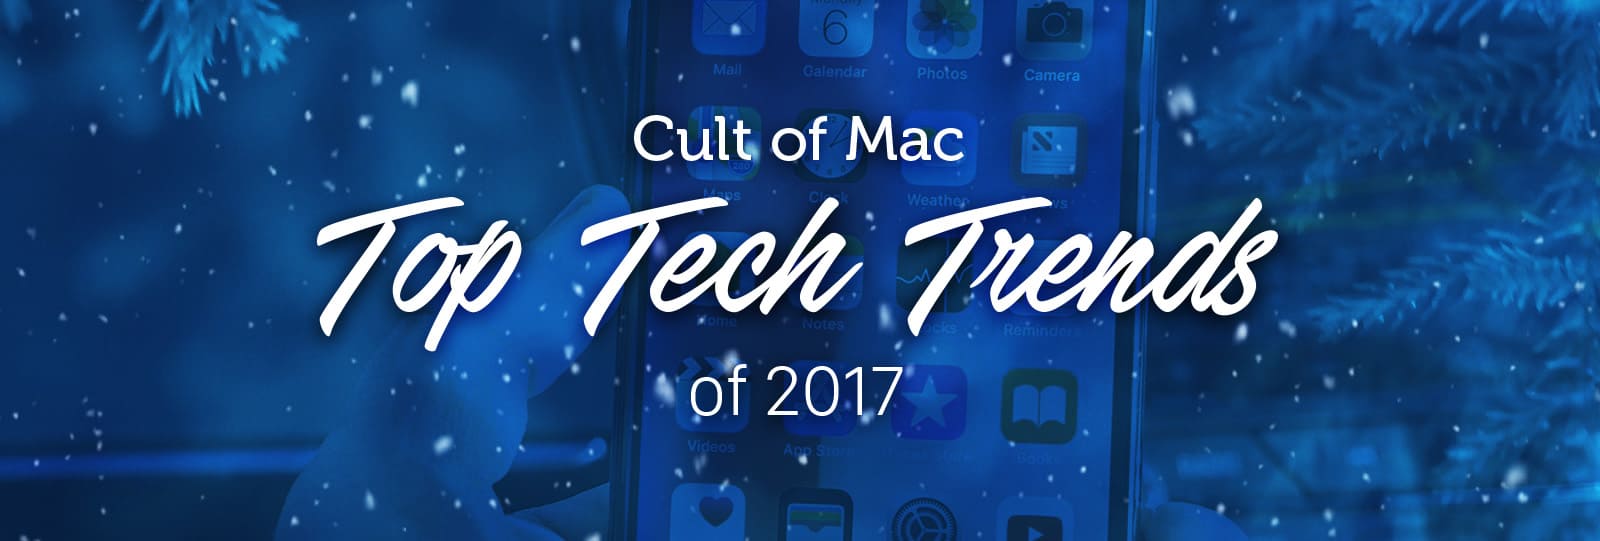 top tech trends 2017